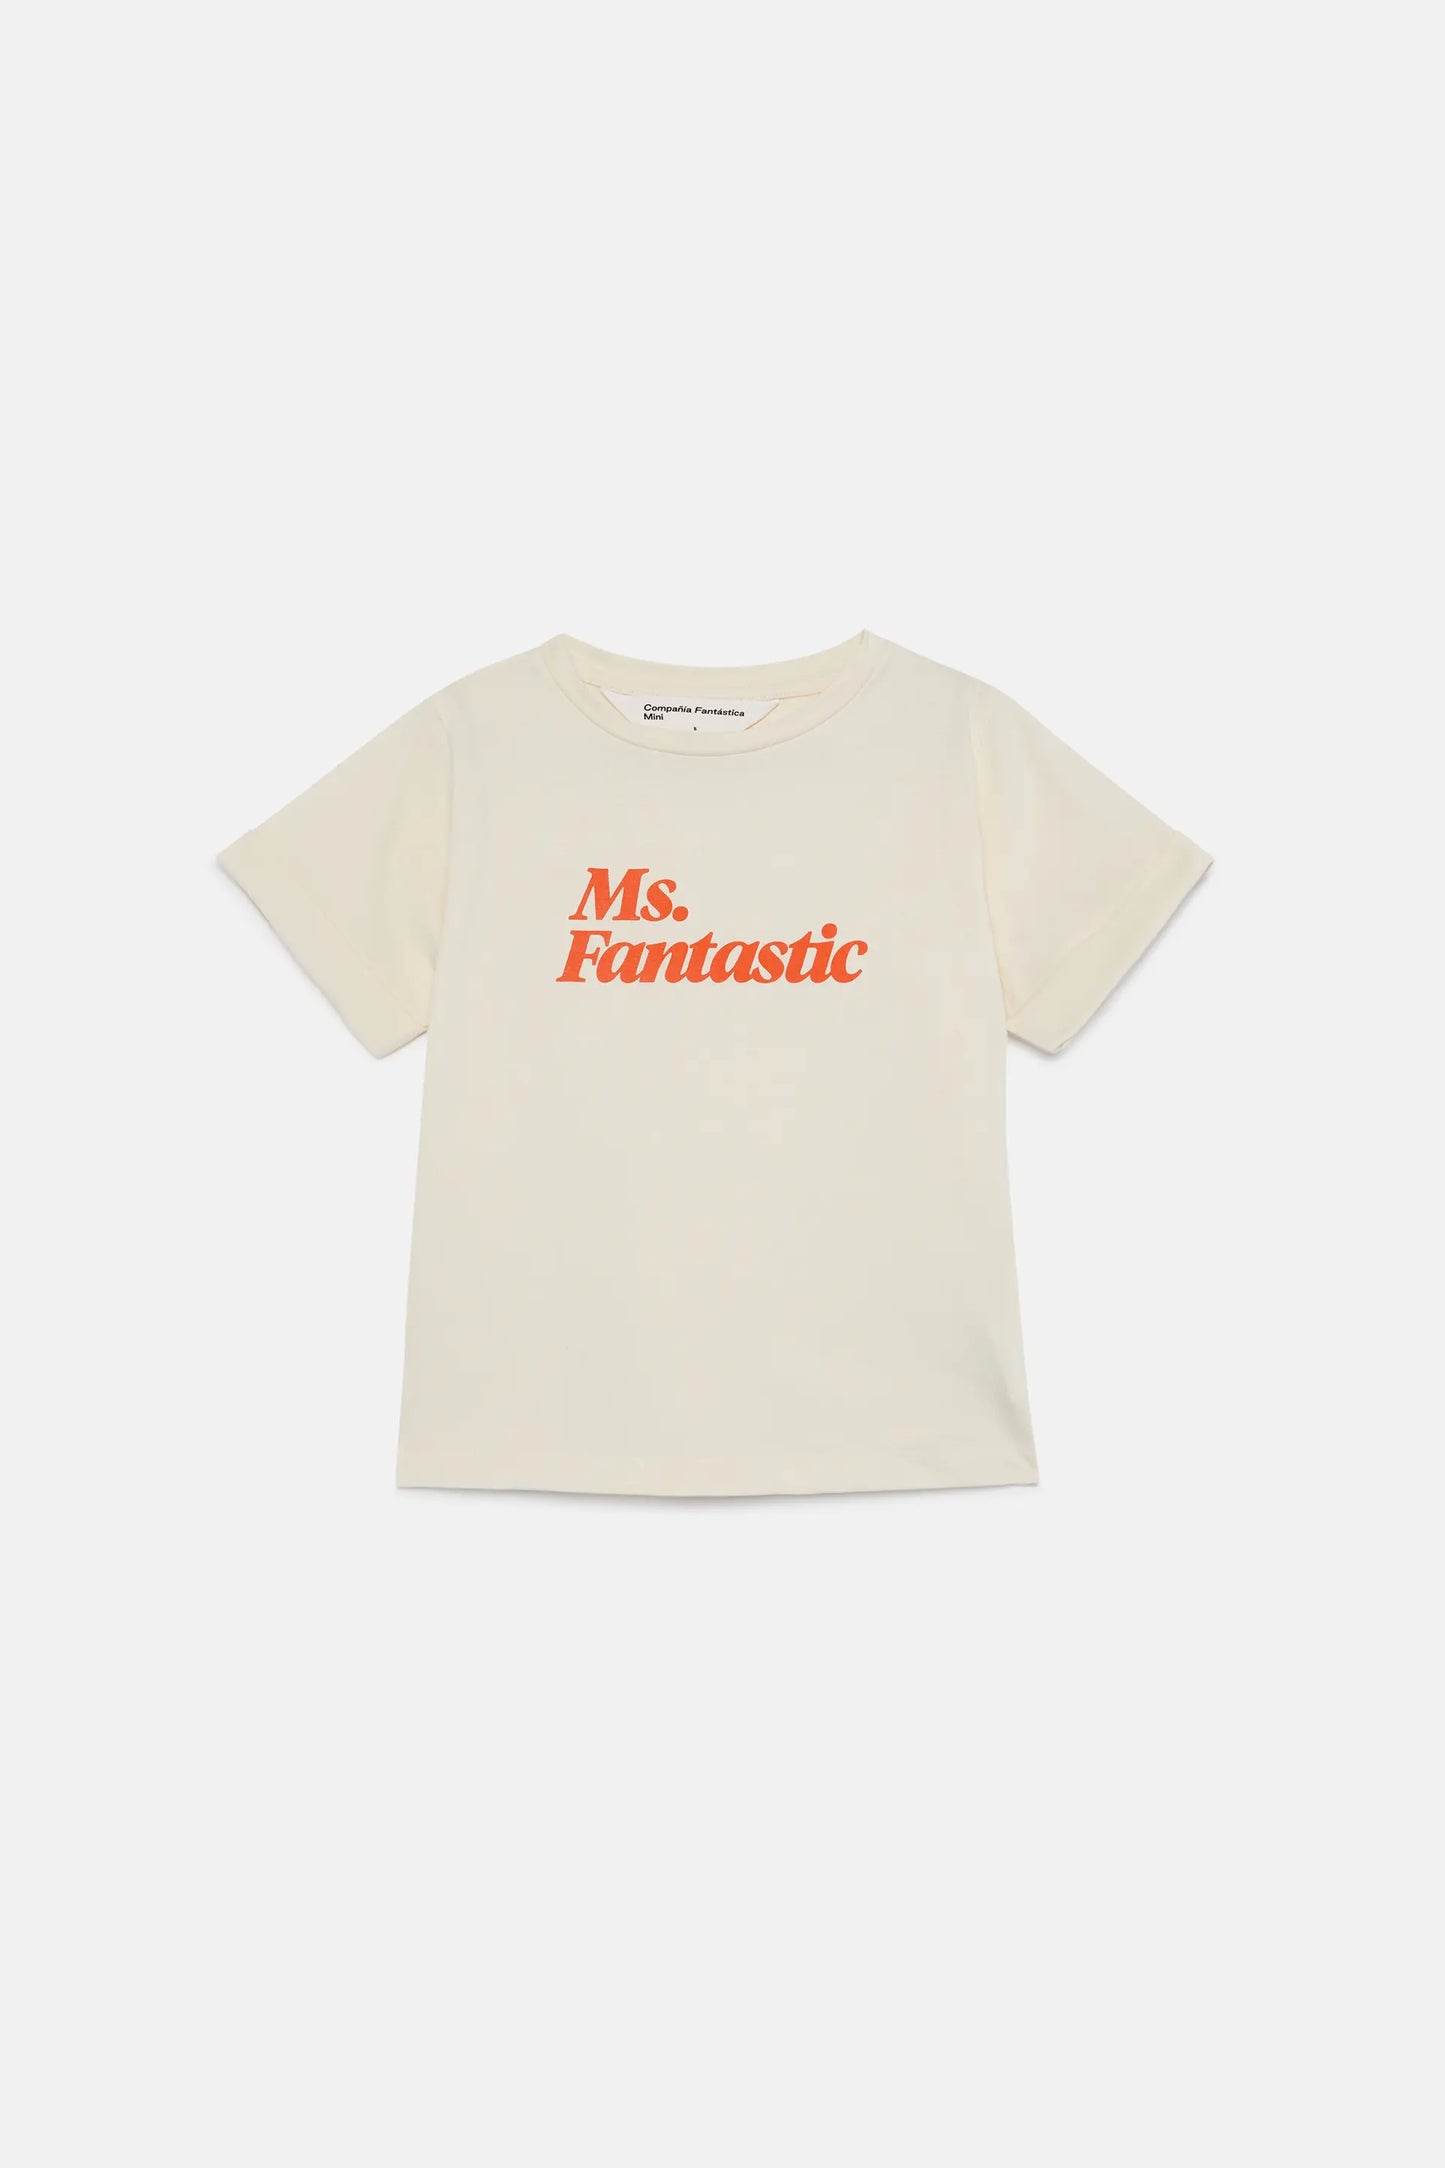 Camiseta unisex Ms Fantastic blanca